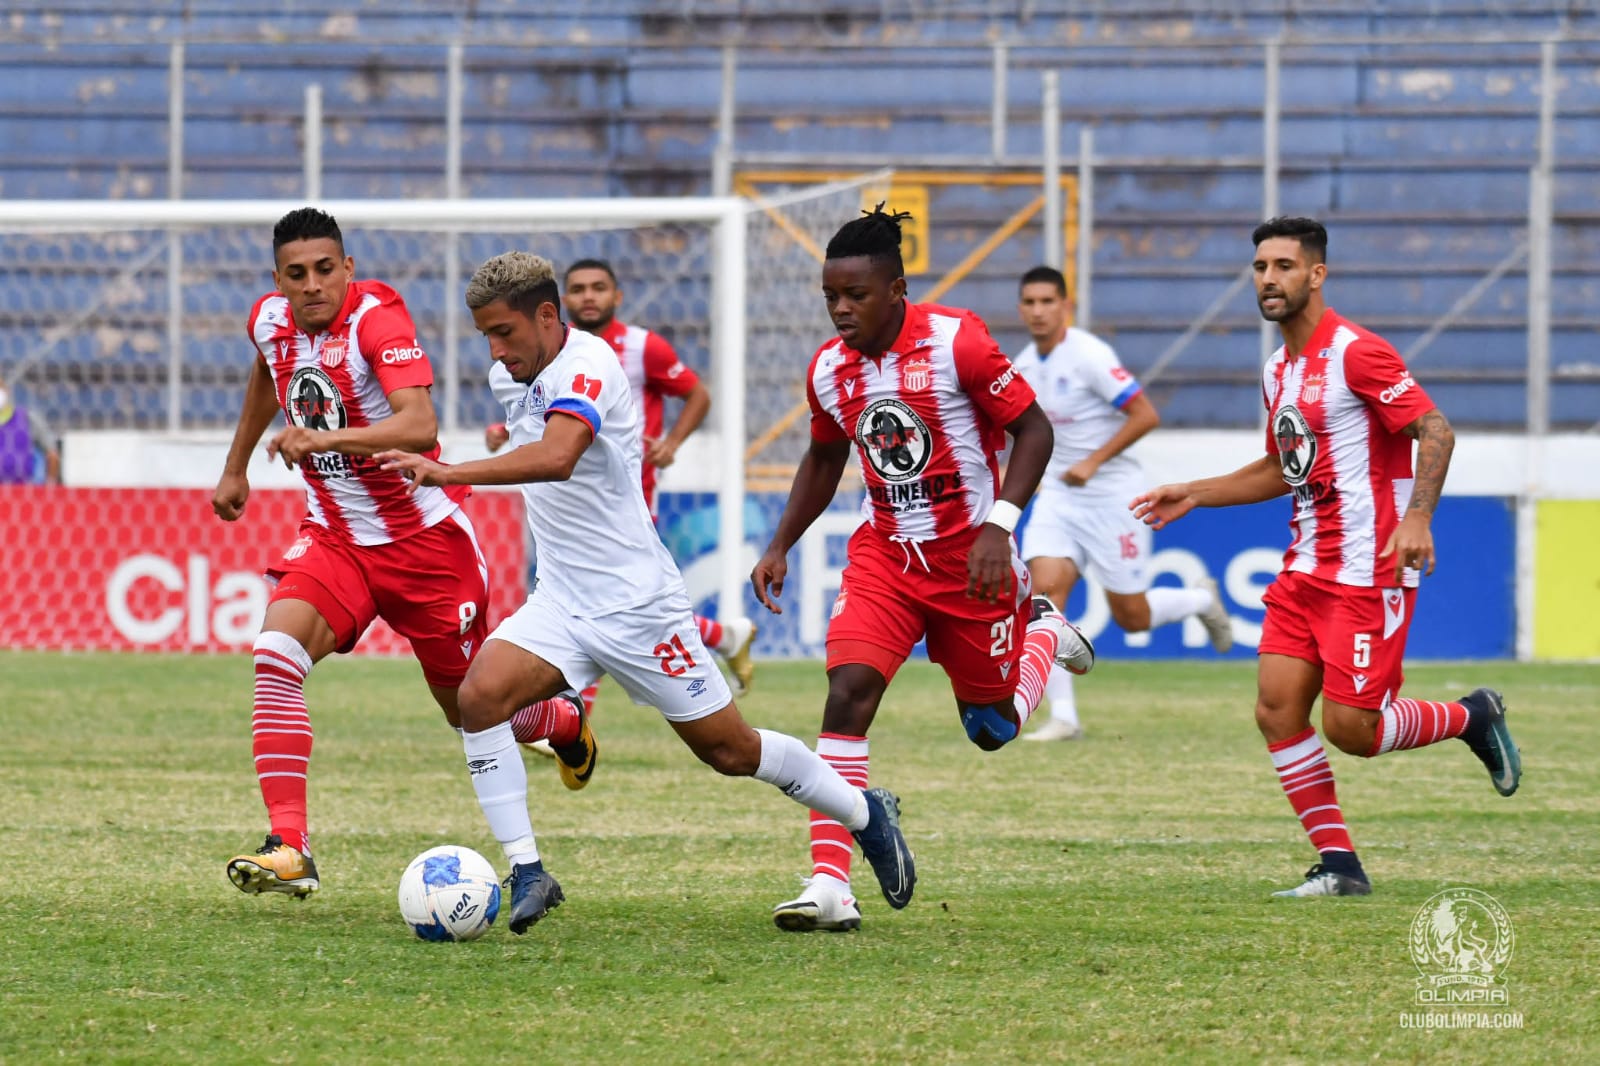 La Liga Nacional continuará este fin de semana con la jornada 14 del Apertura